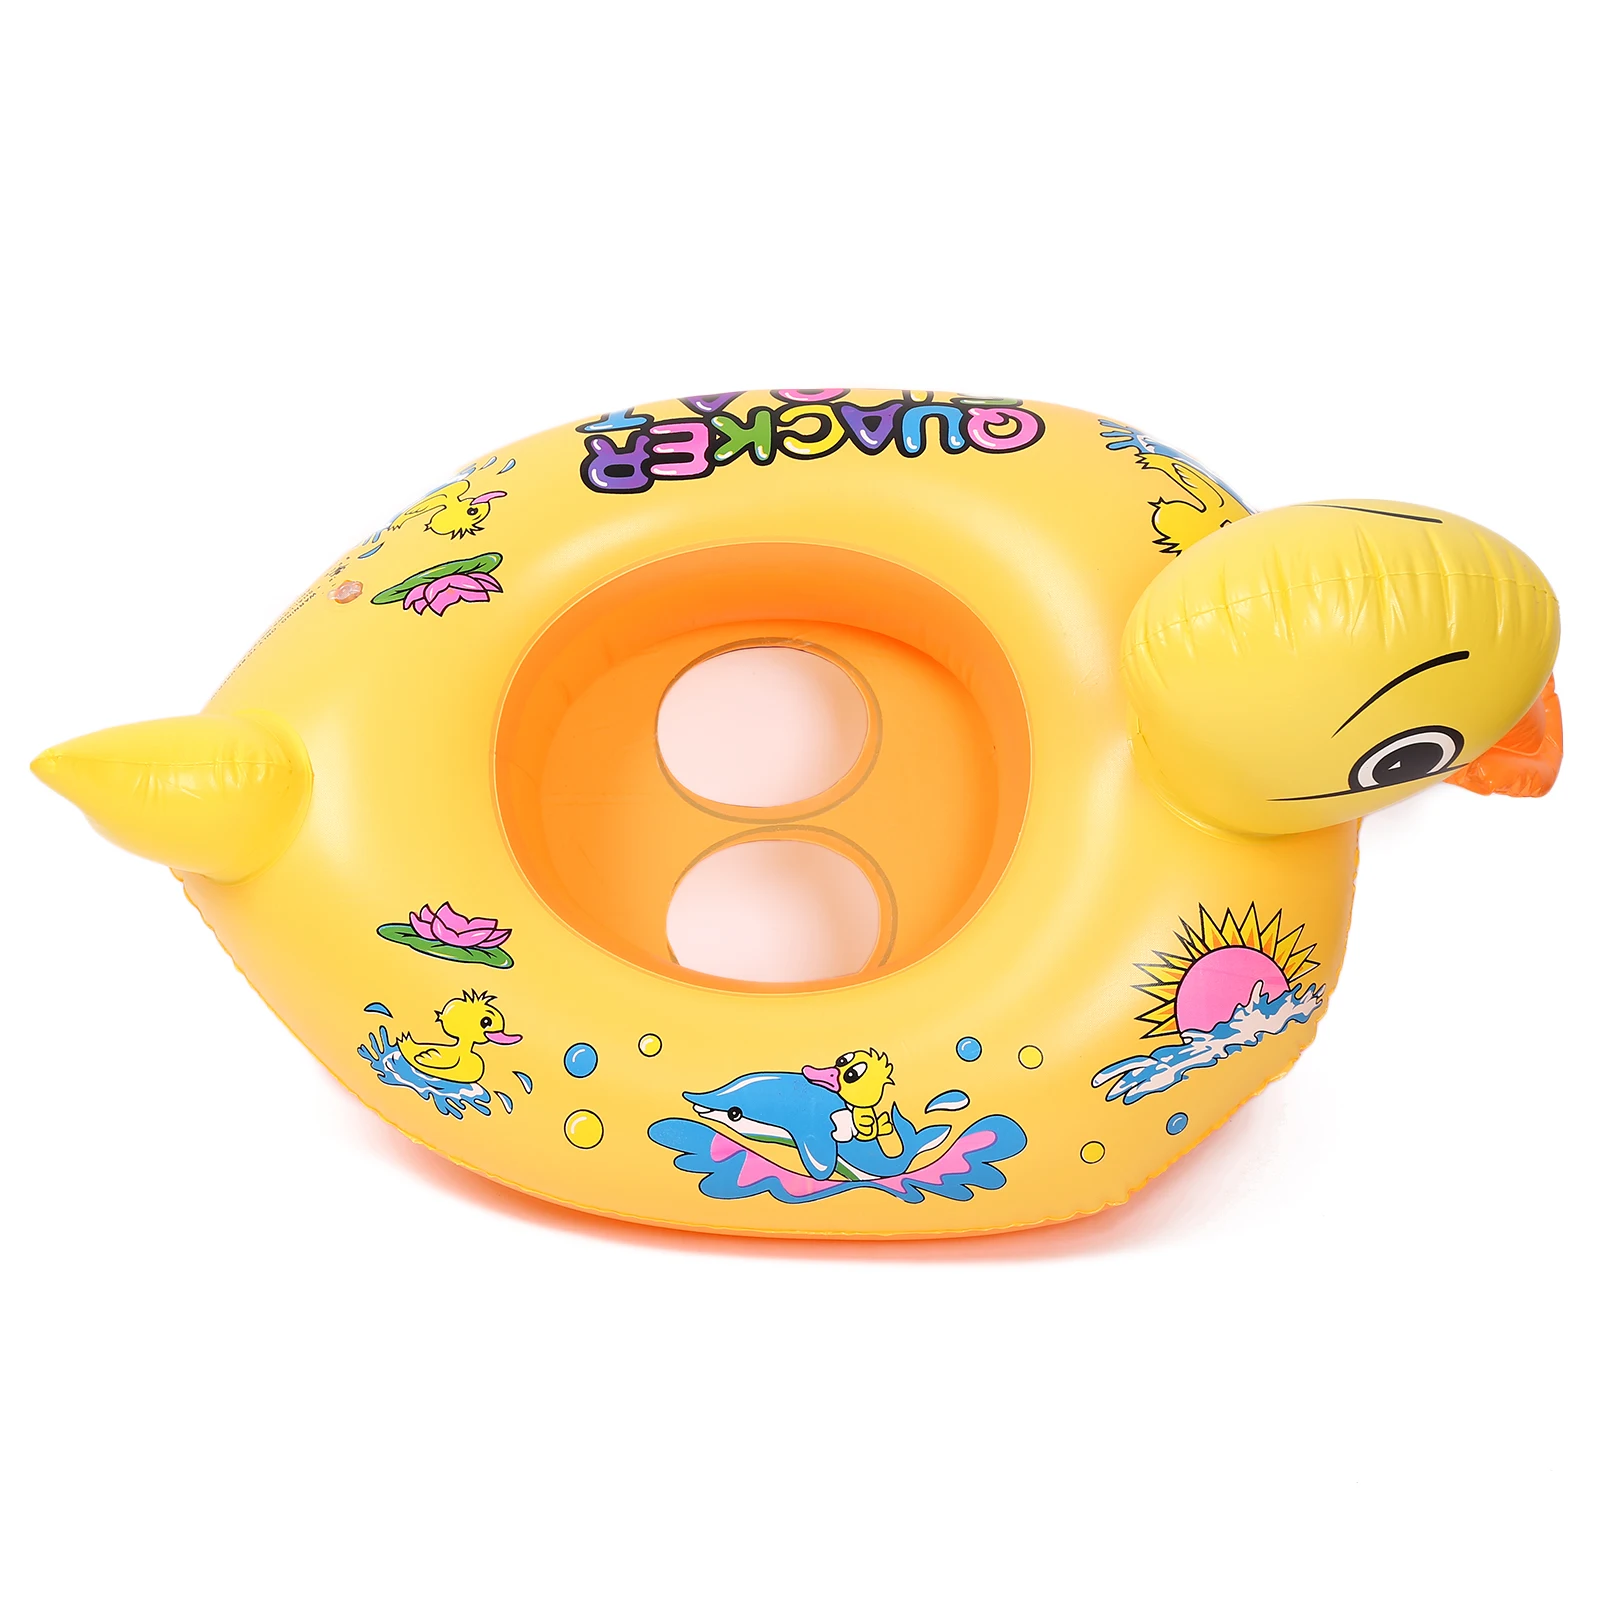 Надувной для плавания поплавок круг кольцо Дети поплавки сиденье милый утка поплавок кольца бассейн игрушка хороший баланс воды спортивные игрушки дропшиппинг